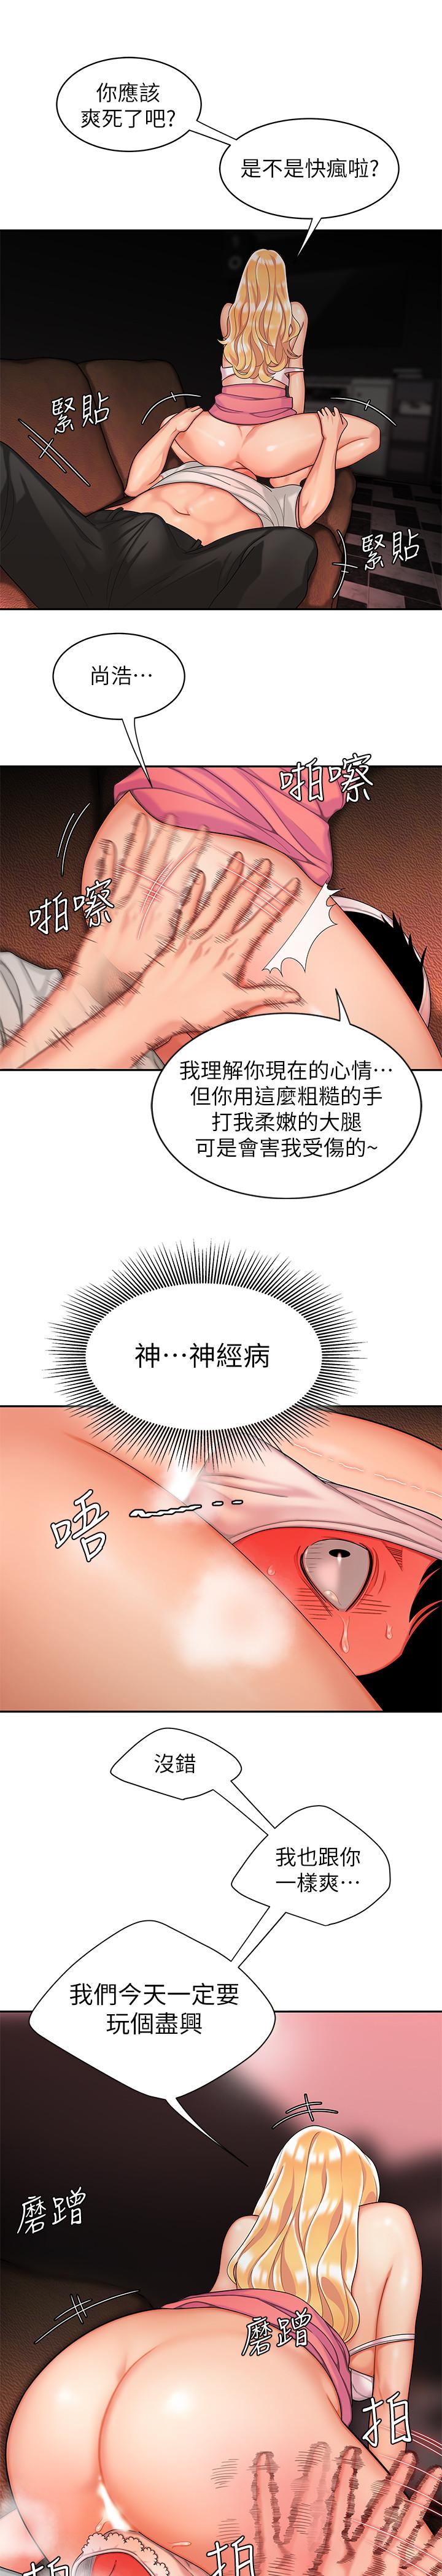 韩国污漫画 幸福外送員 第12话-炸鸡店老板不间断的诱惑 9